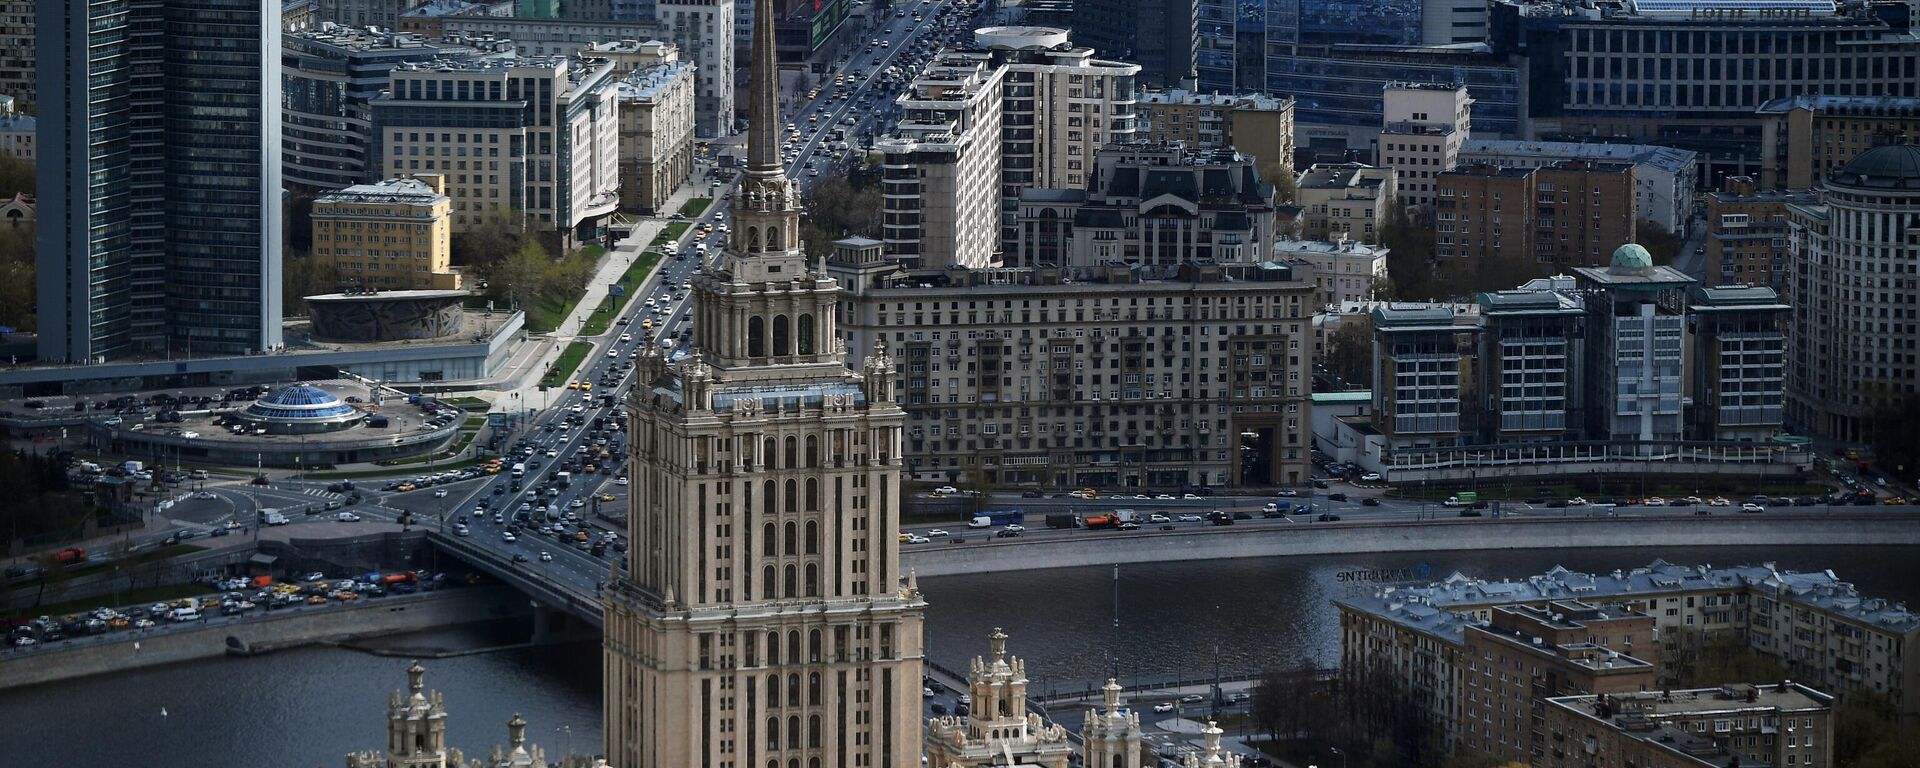 Вид на гостиницу Украина и Новый Арбат в Москве - Sputnik Азербайджан, 1920, 19.10.2021